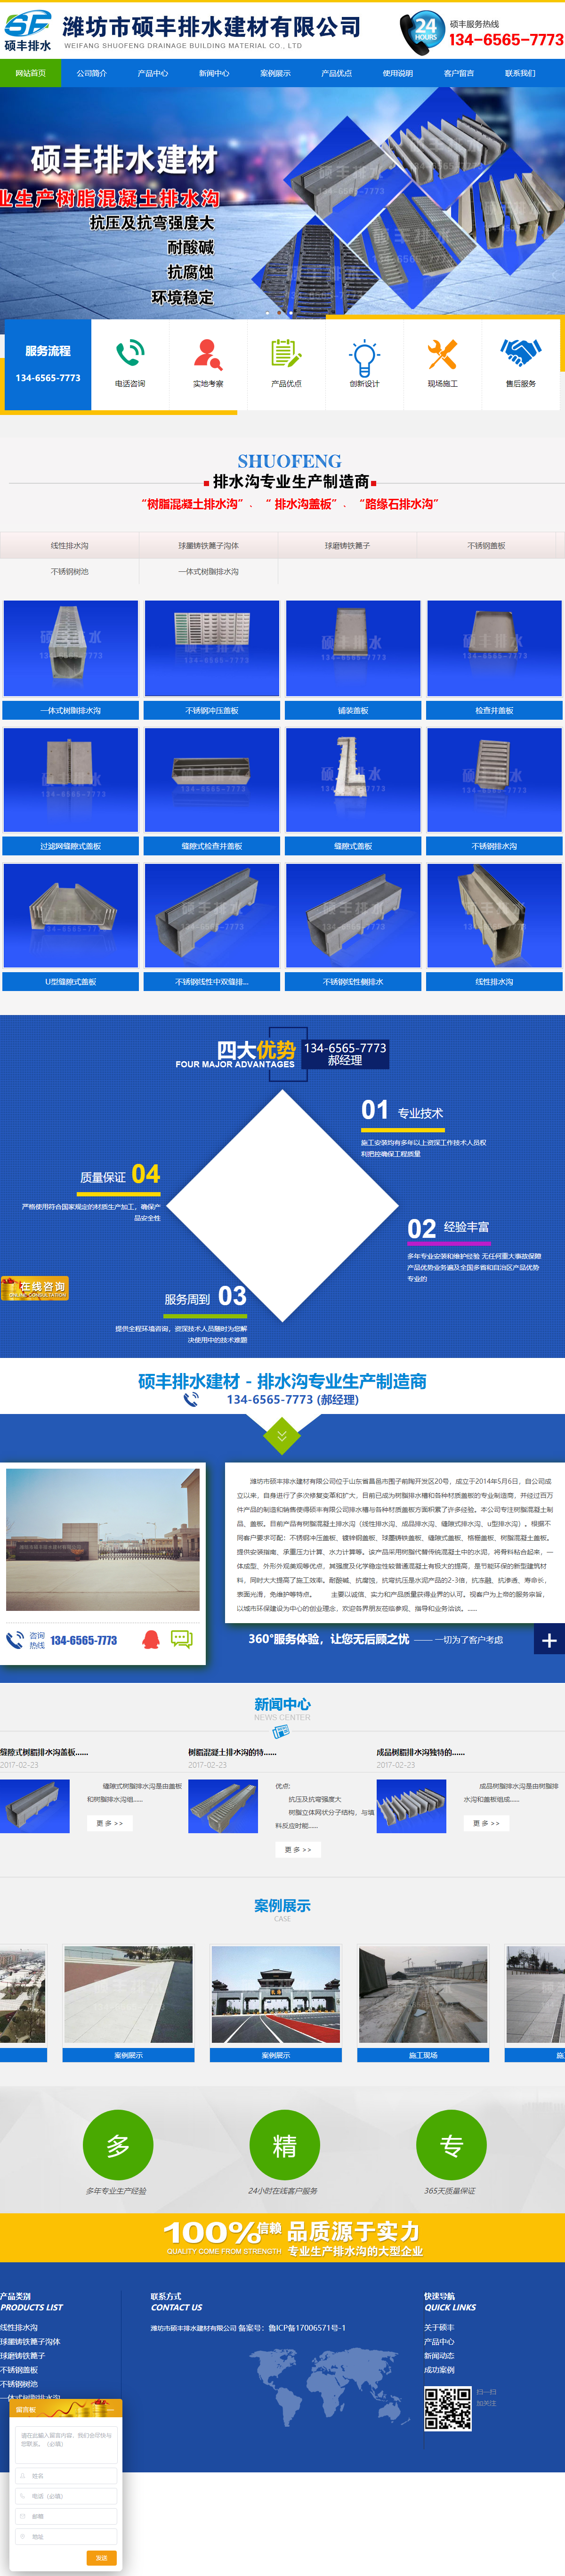 潍坊市硕丰排水建材有限公司网站案例